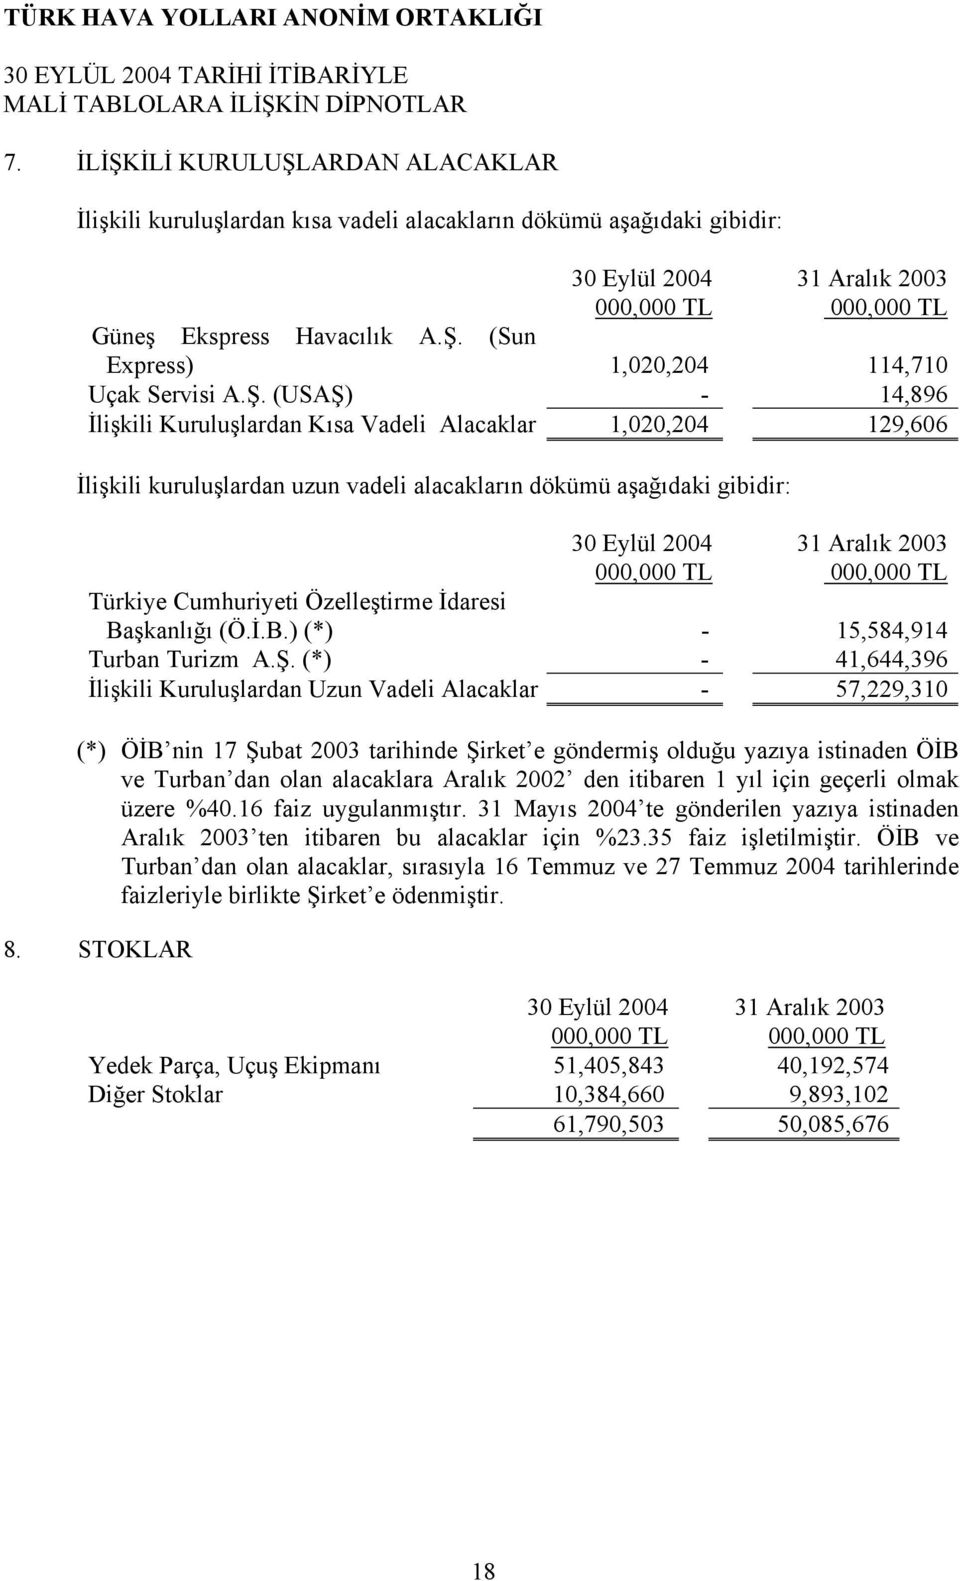 Özelleştirme İdaresi Başkanlığı (Ö.İ.B.) (*) - 15,584,914 Turban Turizm A.Ş.